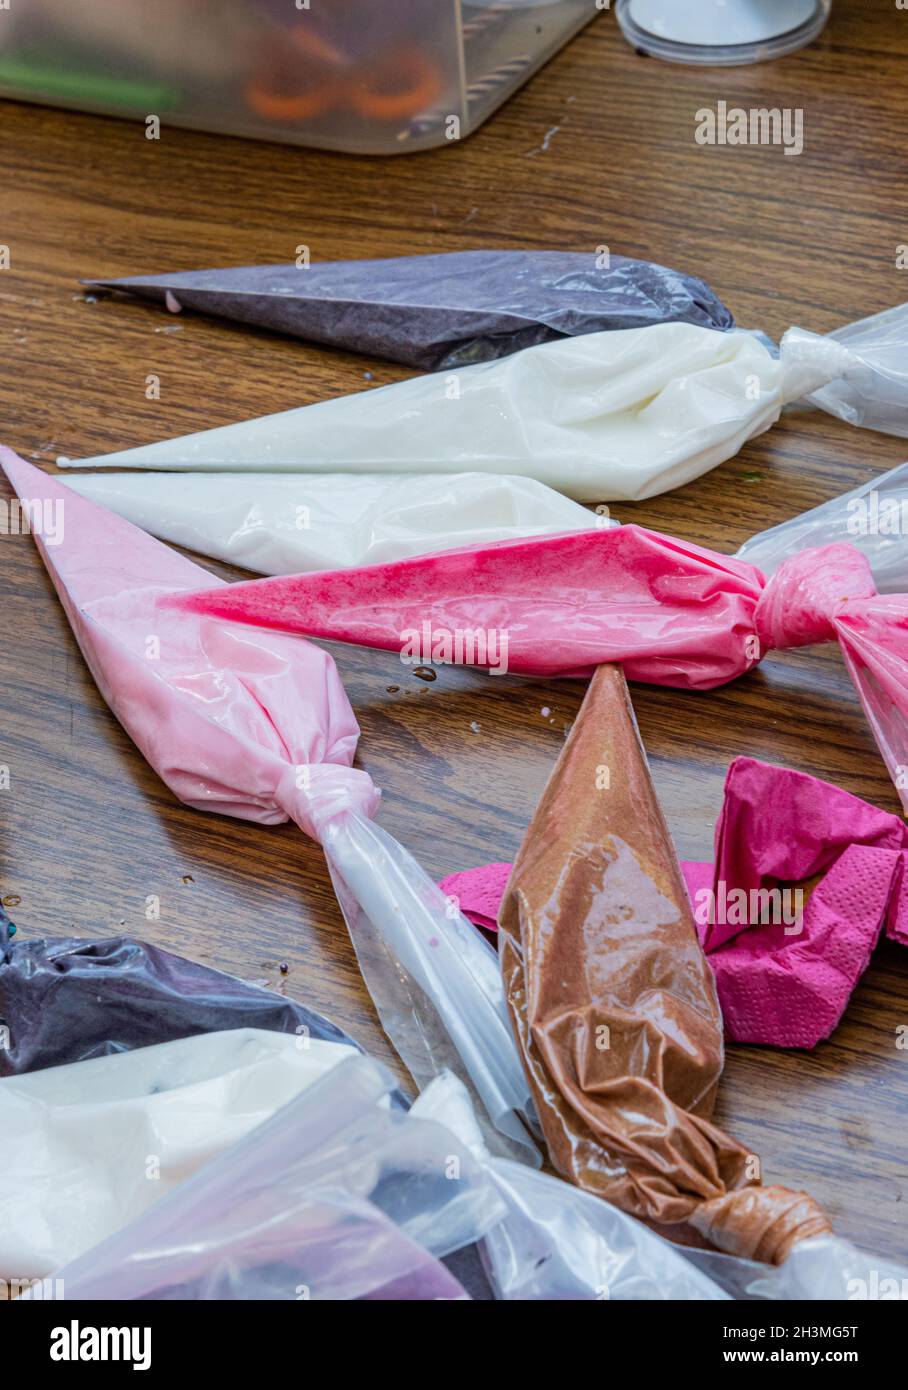 Vista dei sacchetti di tubatura con gli accoppiatori e le punte riempite con glassa reale per decorare i biscotti di zucchero. Foto di alta qualità Foto Stock